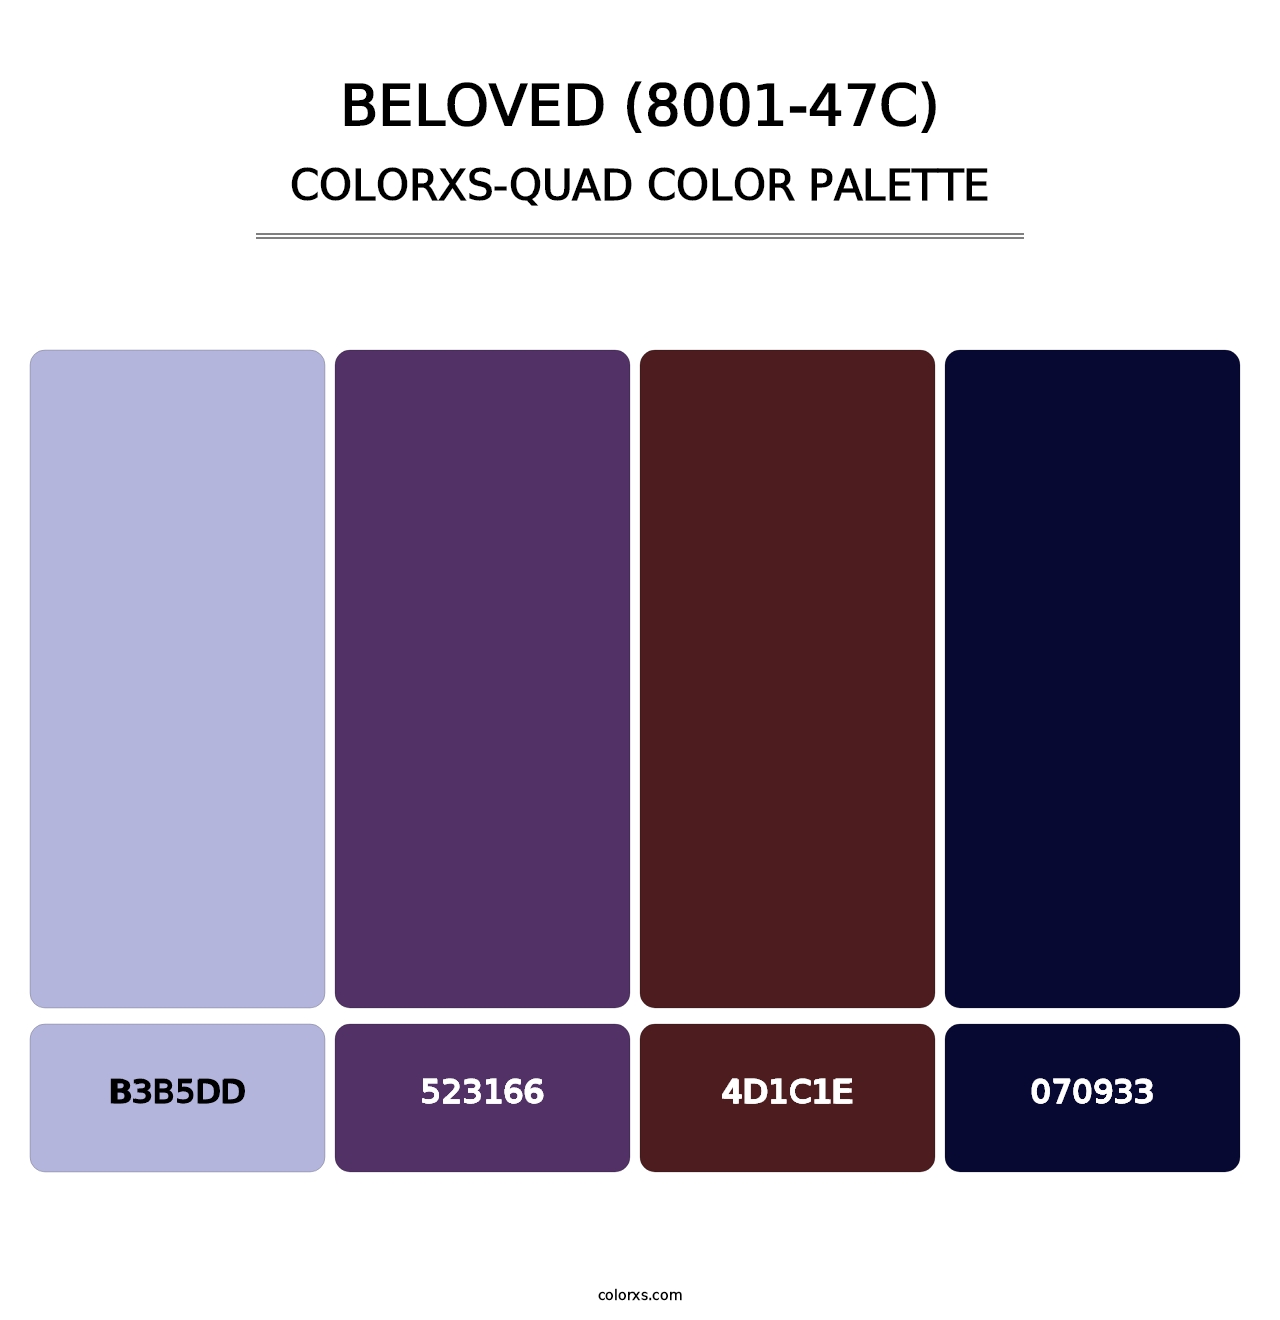 Beloved (8001-47C) - Colorxs Quad Palette